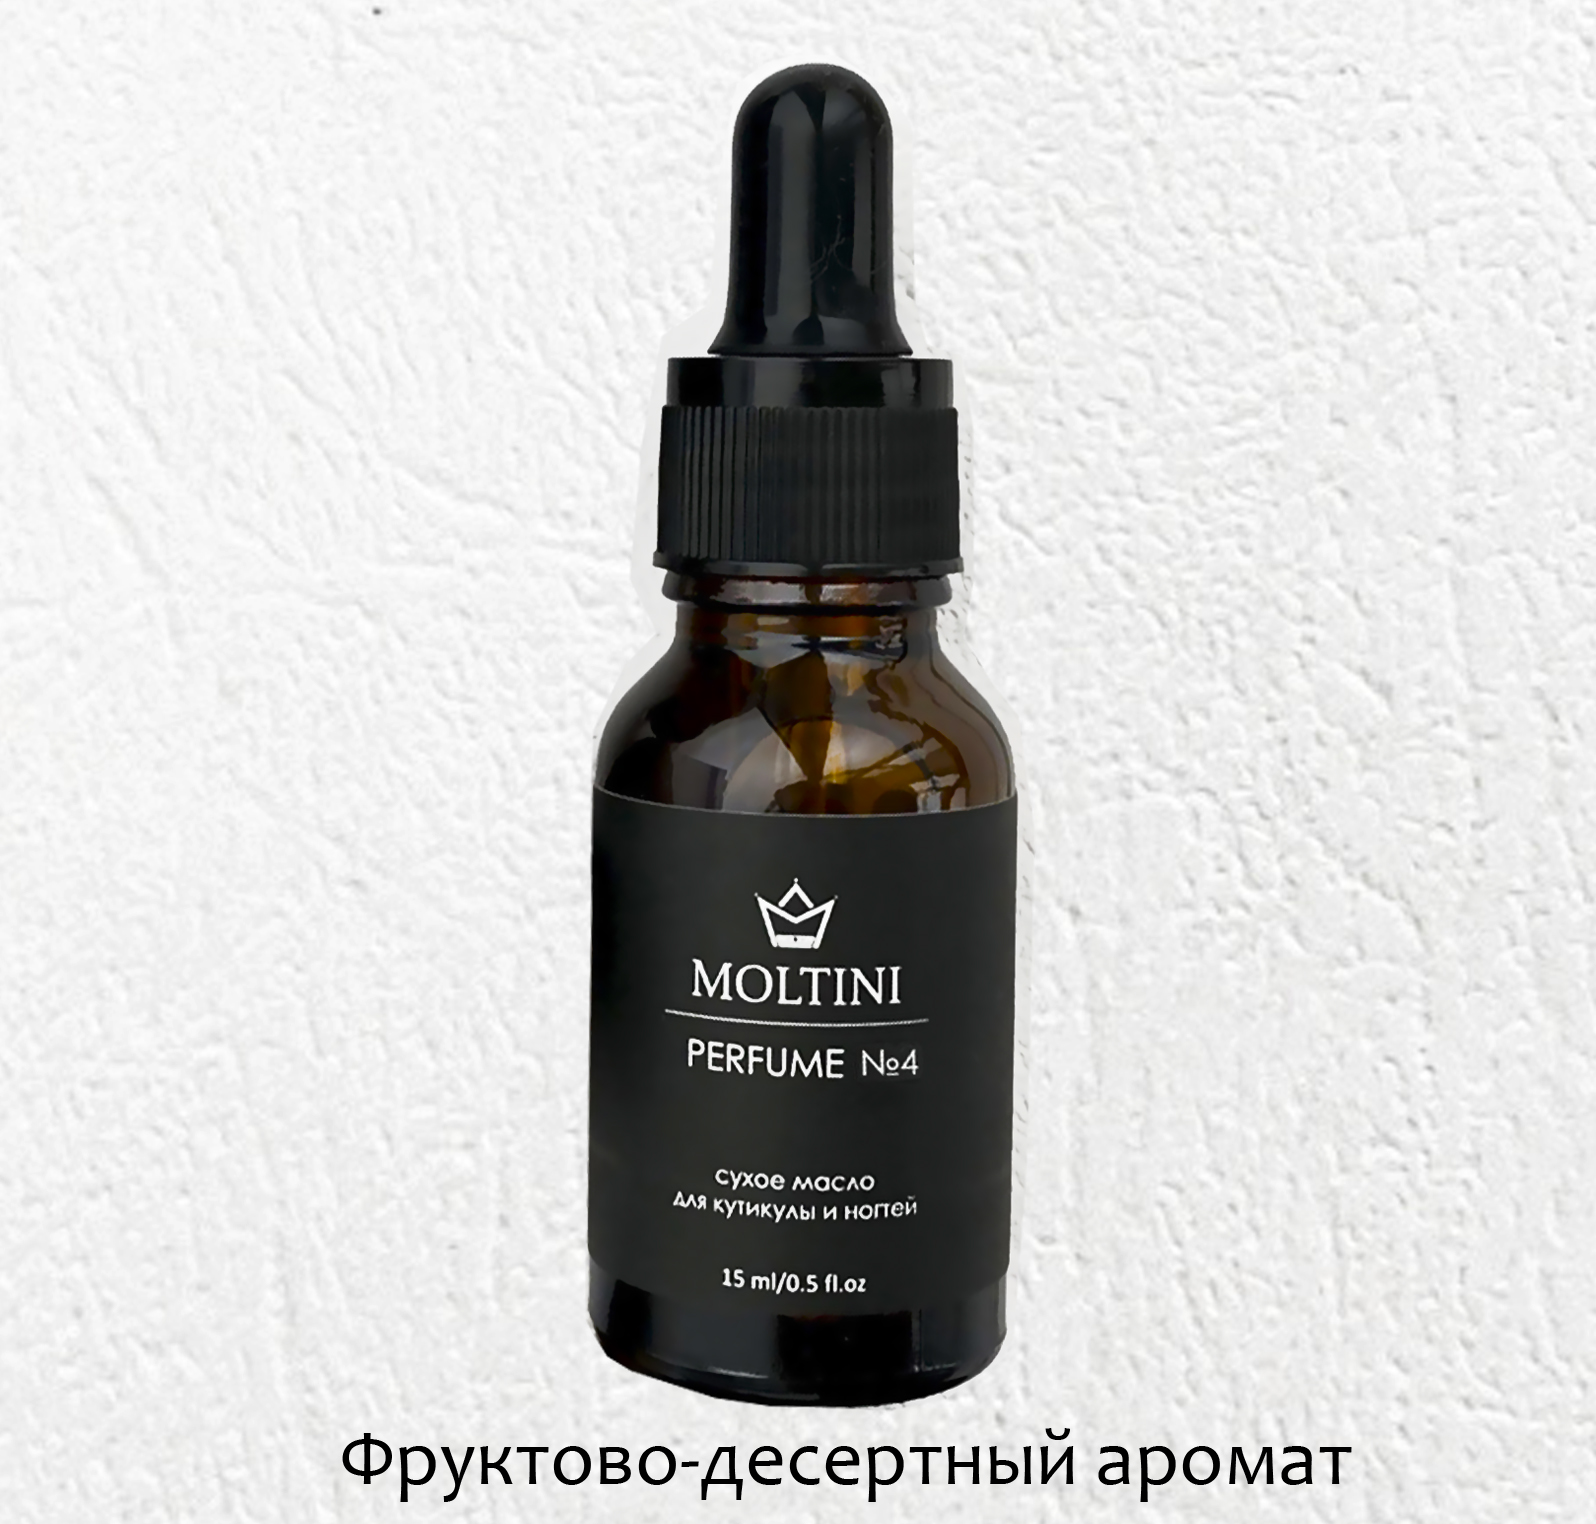 Сухое масло для кутикулы и ногтей "Moltini", аромат № 4 (фруктовый), 15 мл